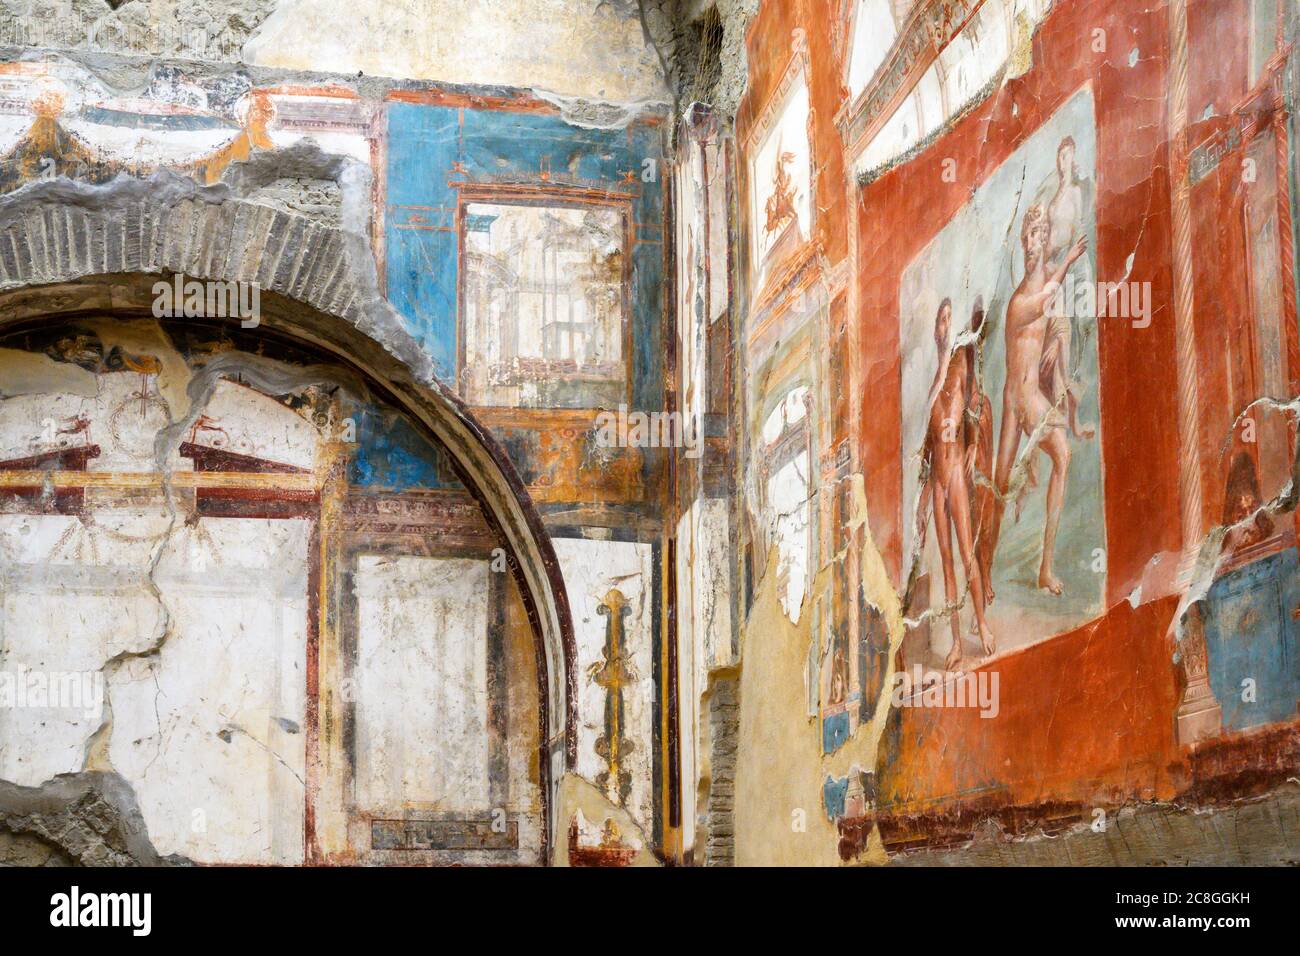 Fresken an den Wänden von Gebäuden in der römischen Stadt Herculaneum, die teilweise zerstört wurde bei der Eruption des Vesuv im Jahr 79 n. Chr. erhalten Stockfoto